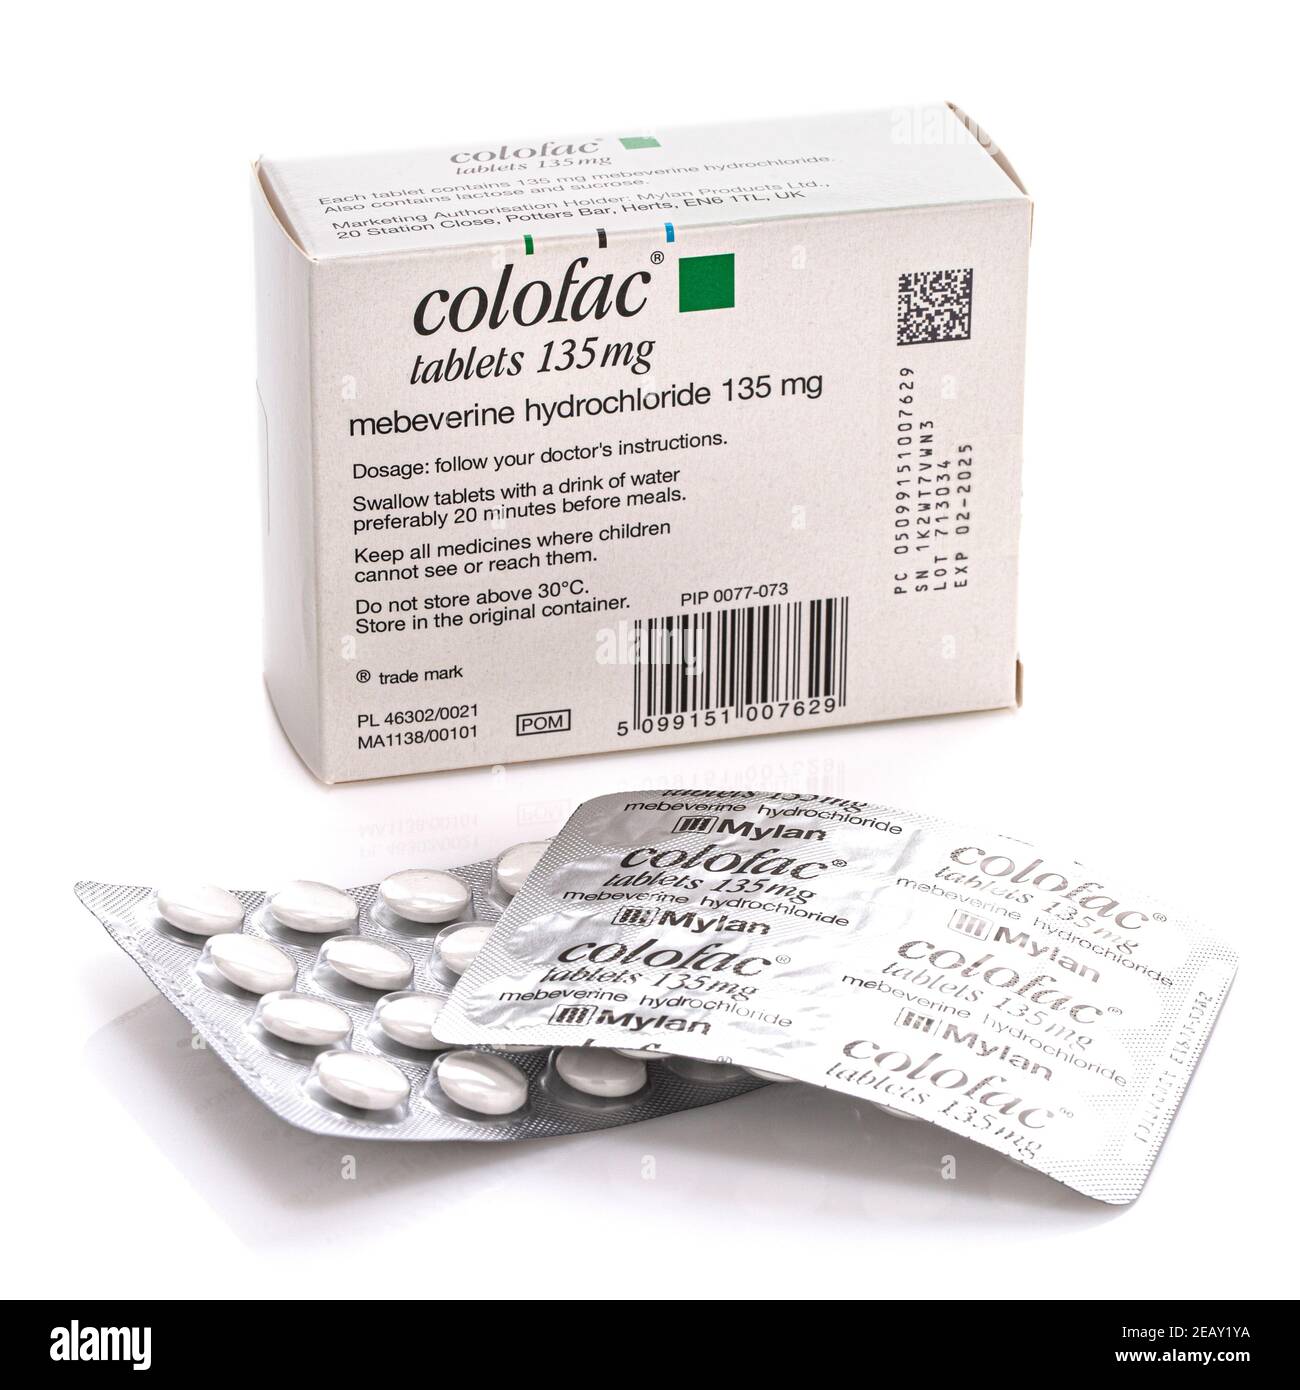 SWINDON, Großbritannien - 11. FEBRUAR 2021: Paket von colofac Mebeverin Hydrochlorid krampflösende Tabletten zur Behandlung von Reizdarmsyndrom und andere in Stockfoto